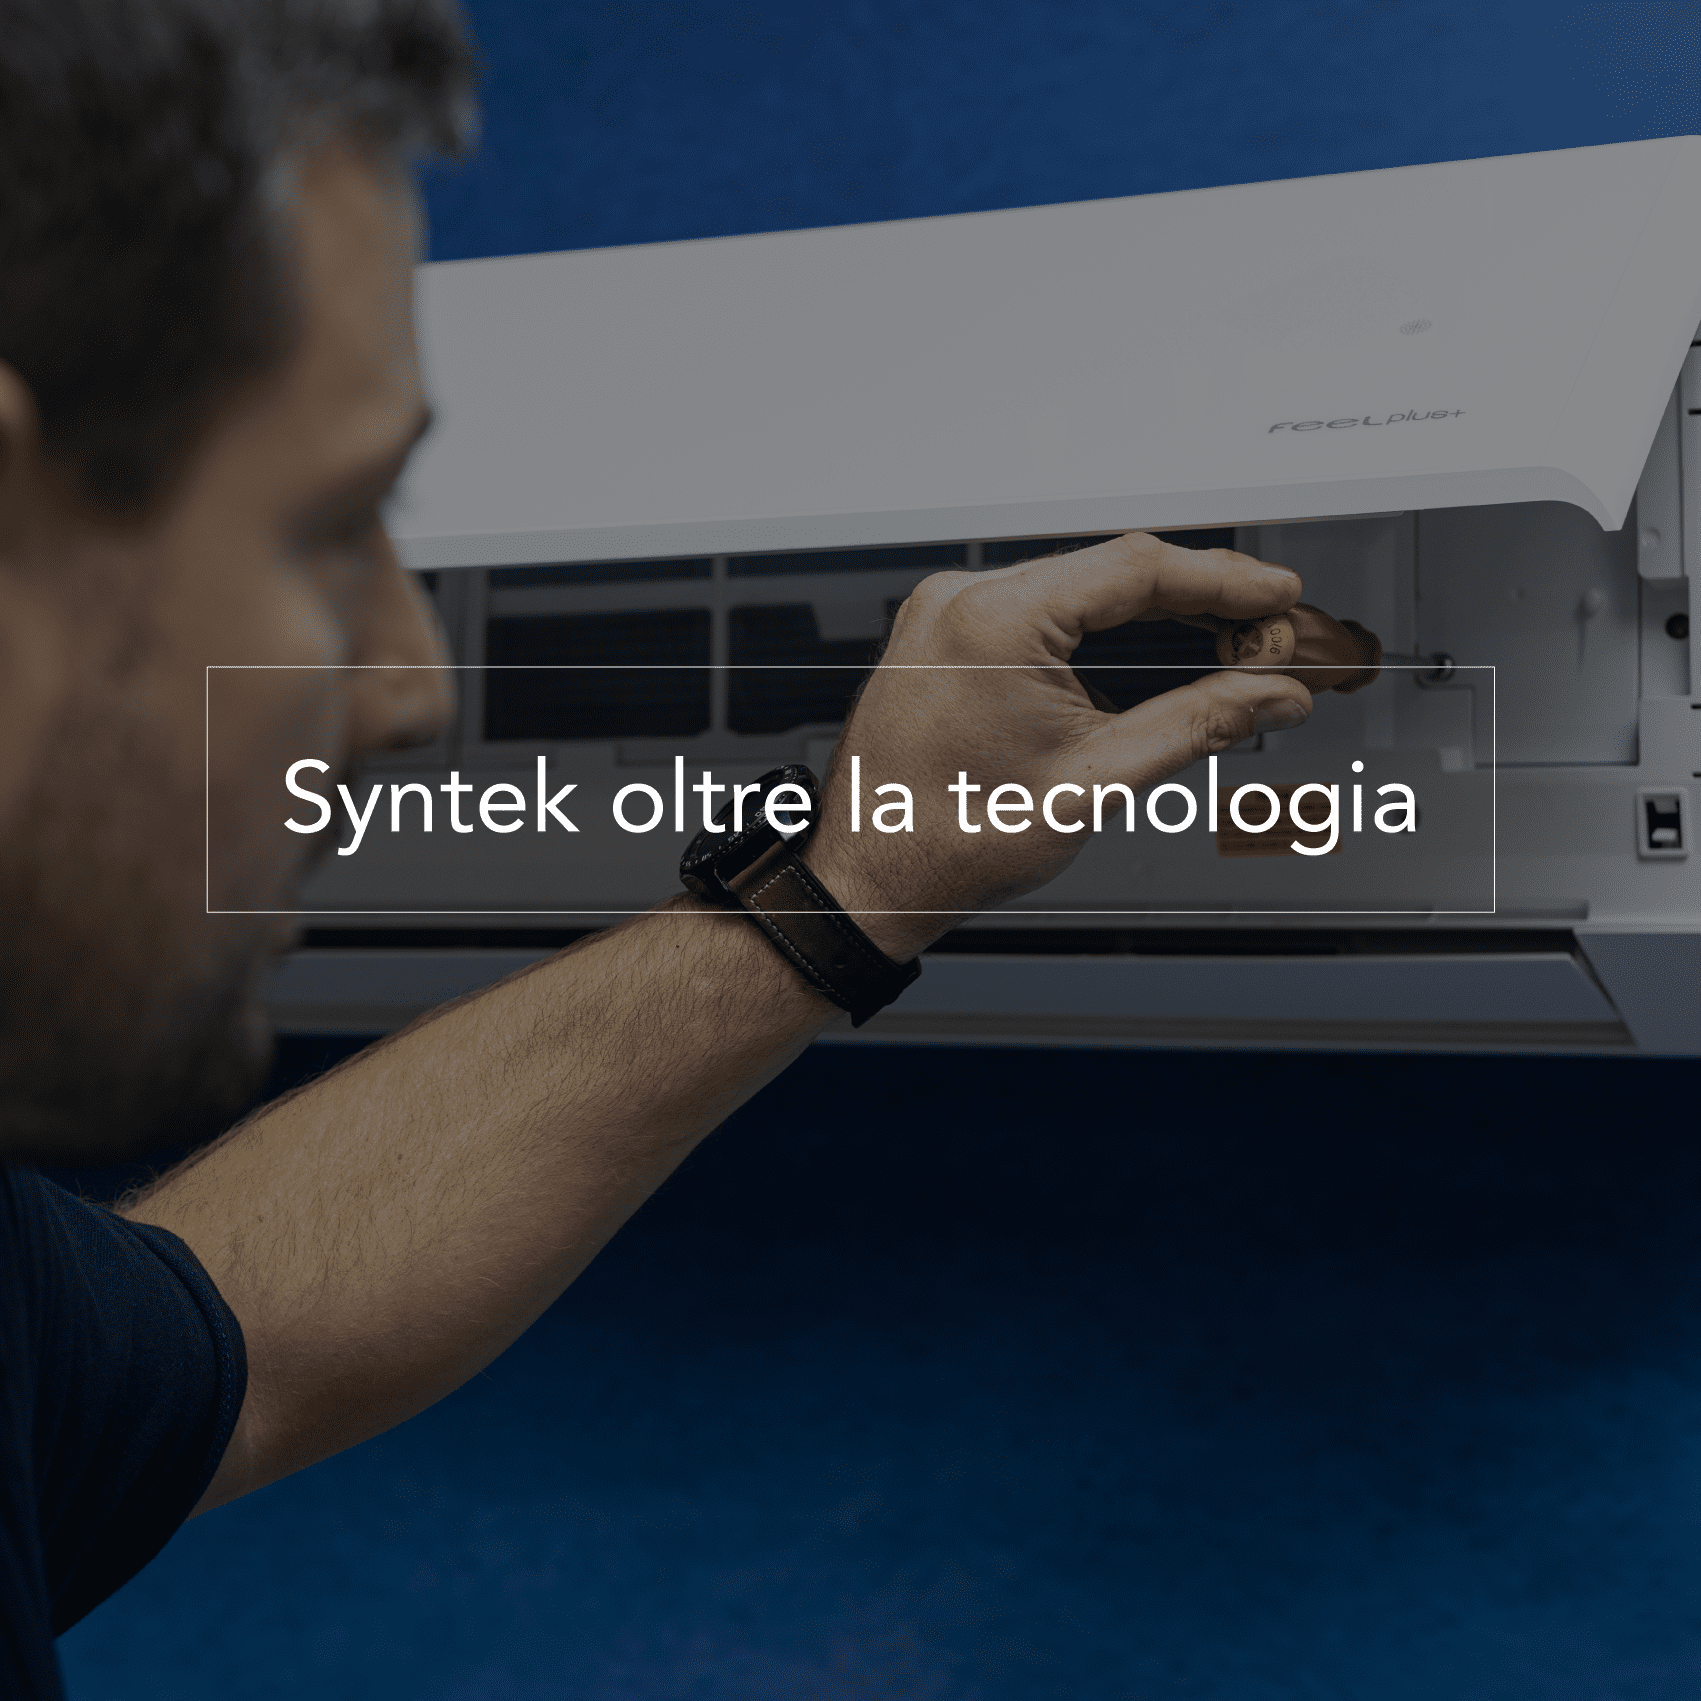 Syntek oltre la tecnologia con servizi di manutenzione e assistenza costanti: esserci sempre fa la differenza